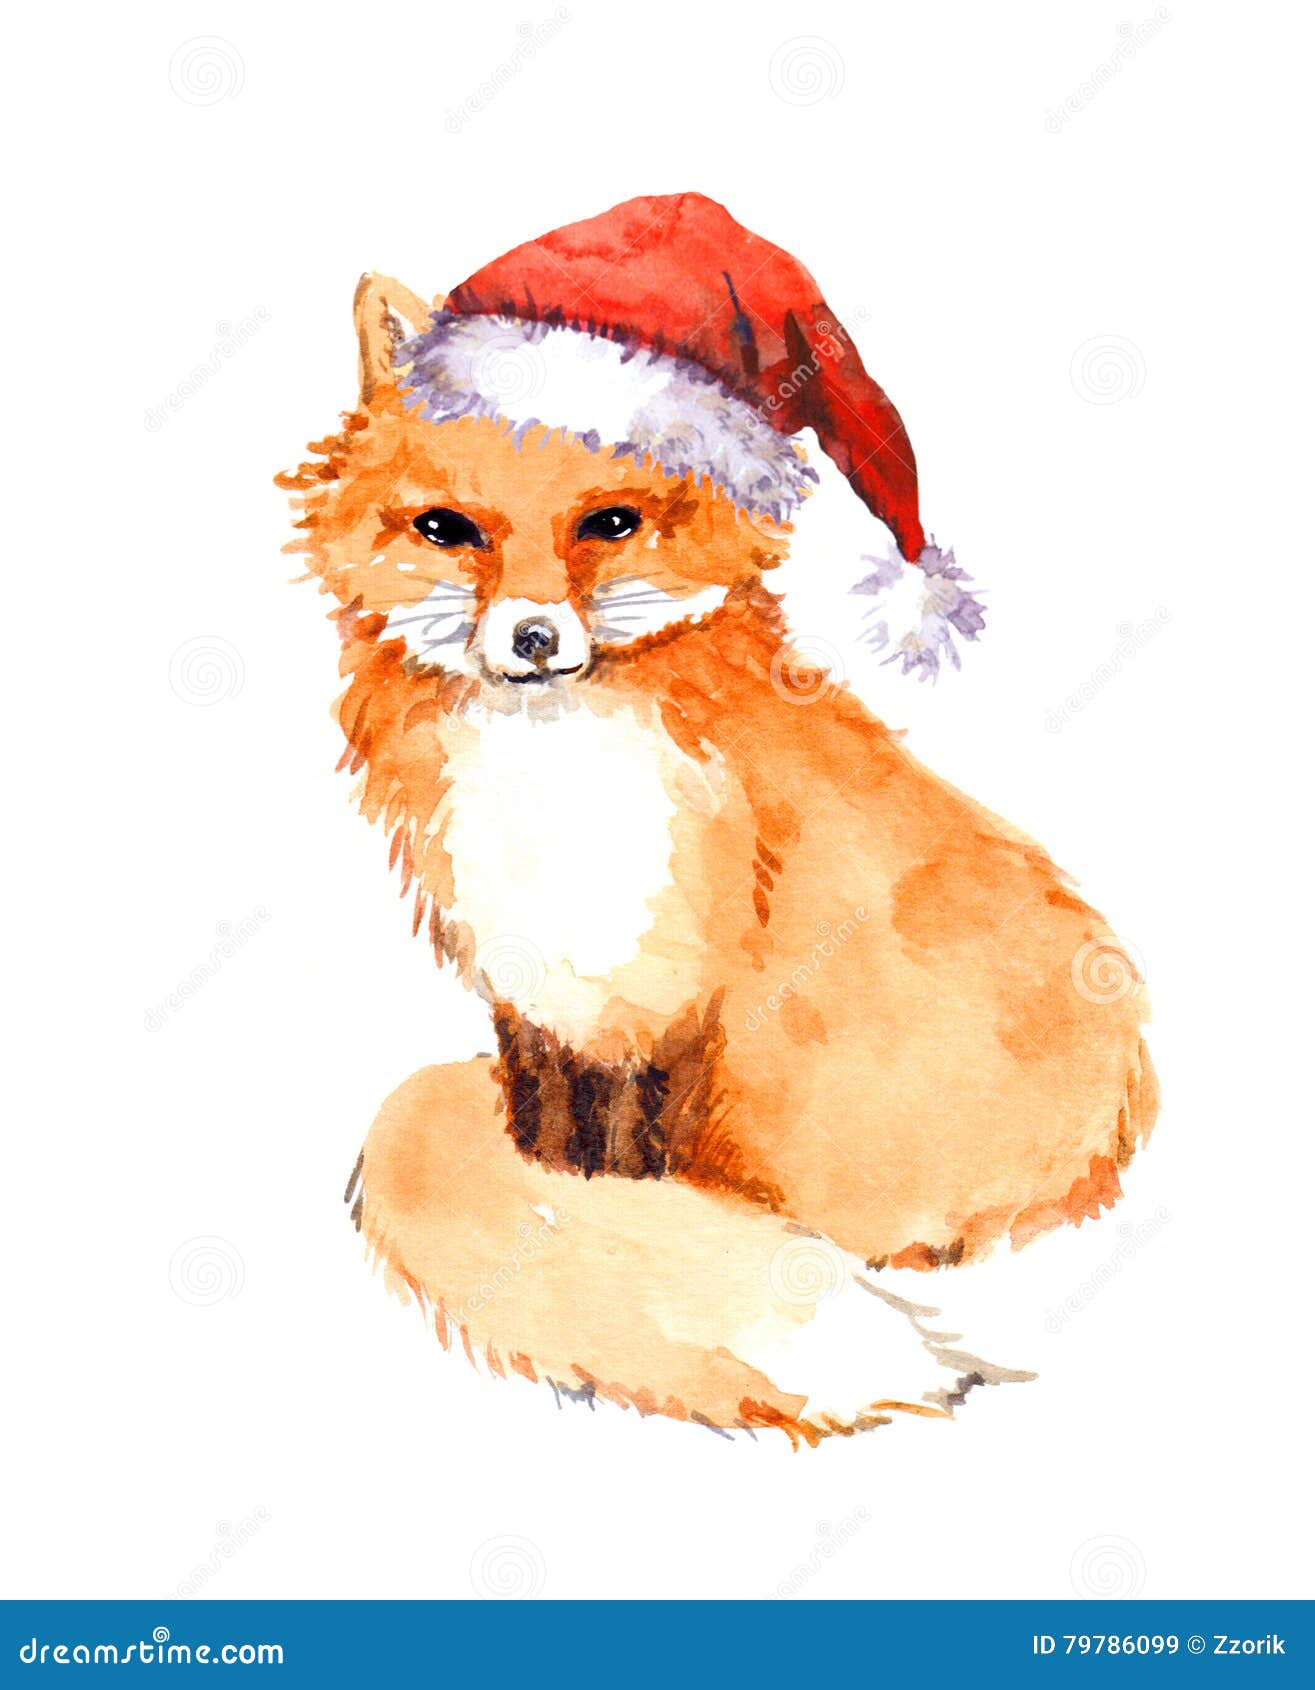 Christmas Fox In Red Santa Hat. Watercolor Stock Image | CartoonDealer ...